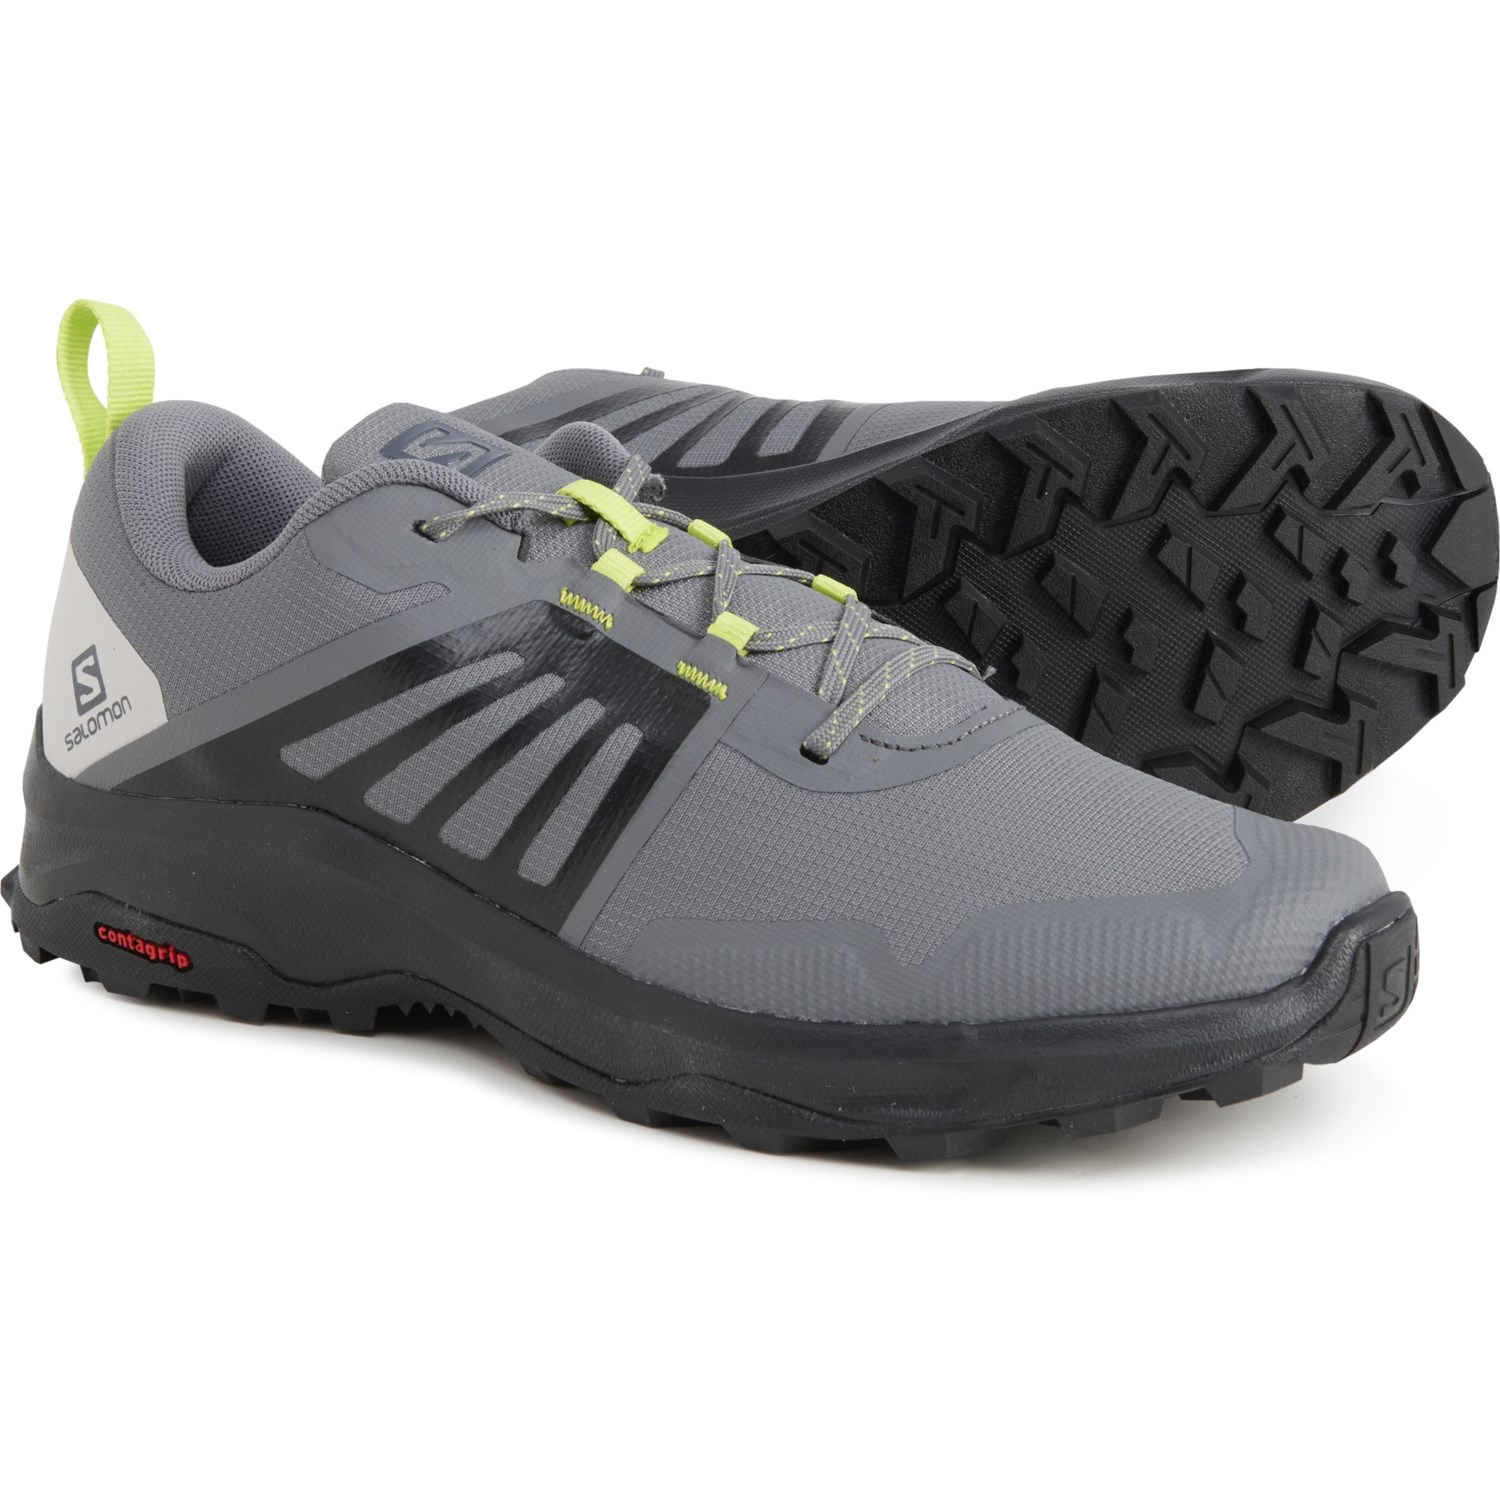 Medisch zwak Geheim Salomon X-Render Trail Running Shoes (For Men) - Save 59%